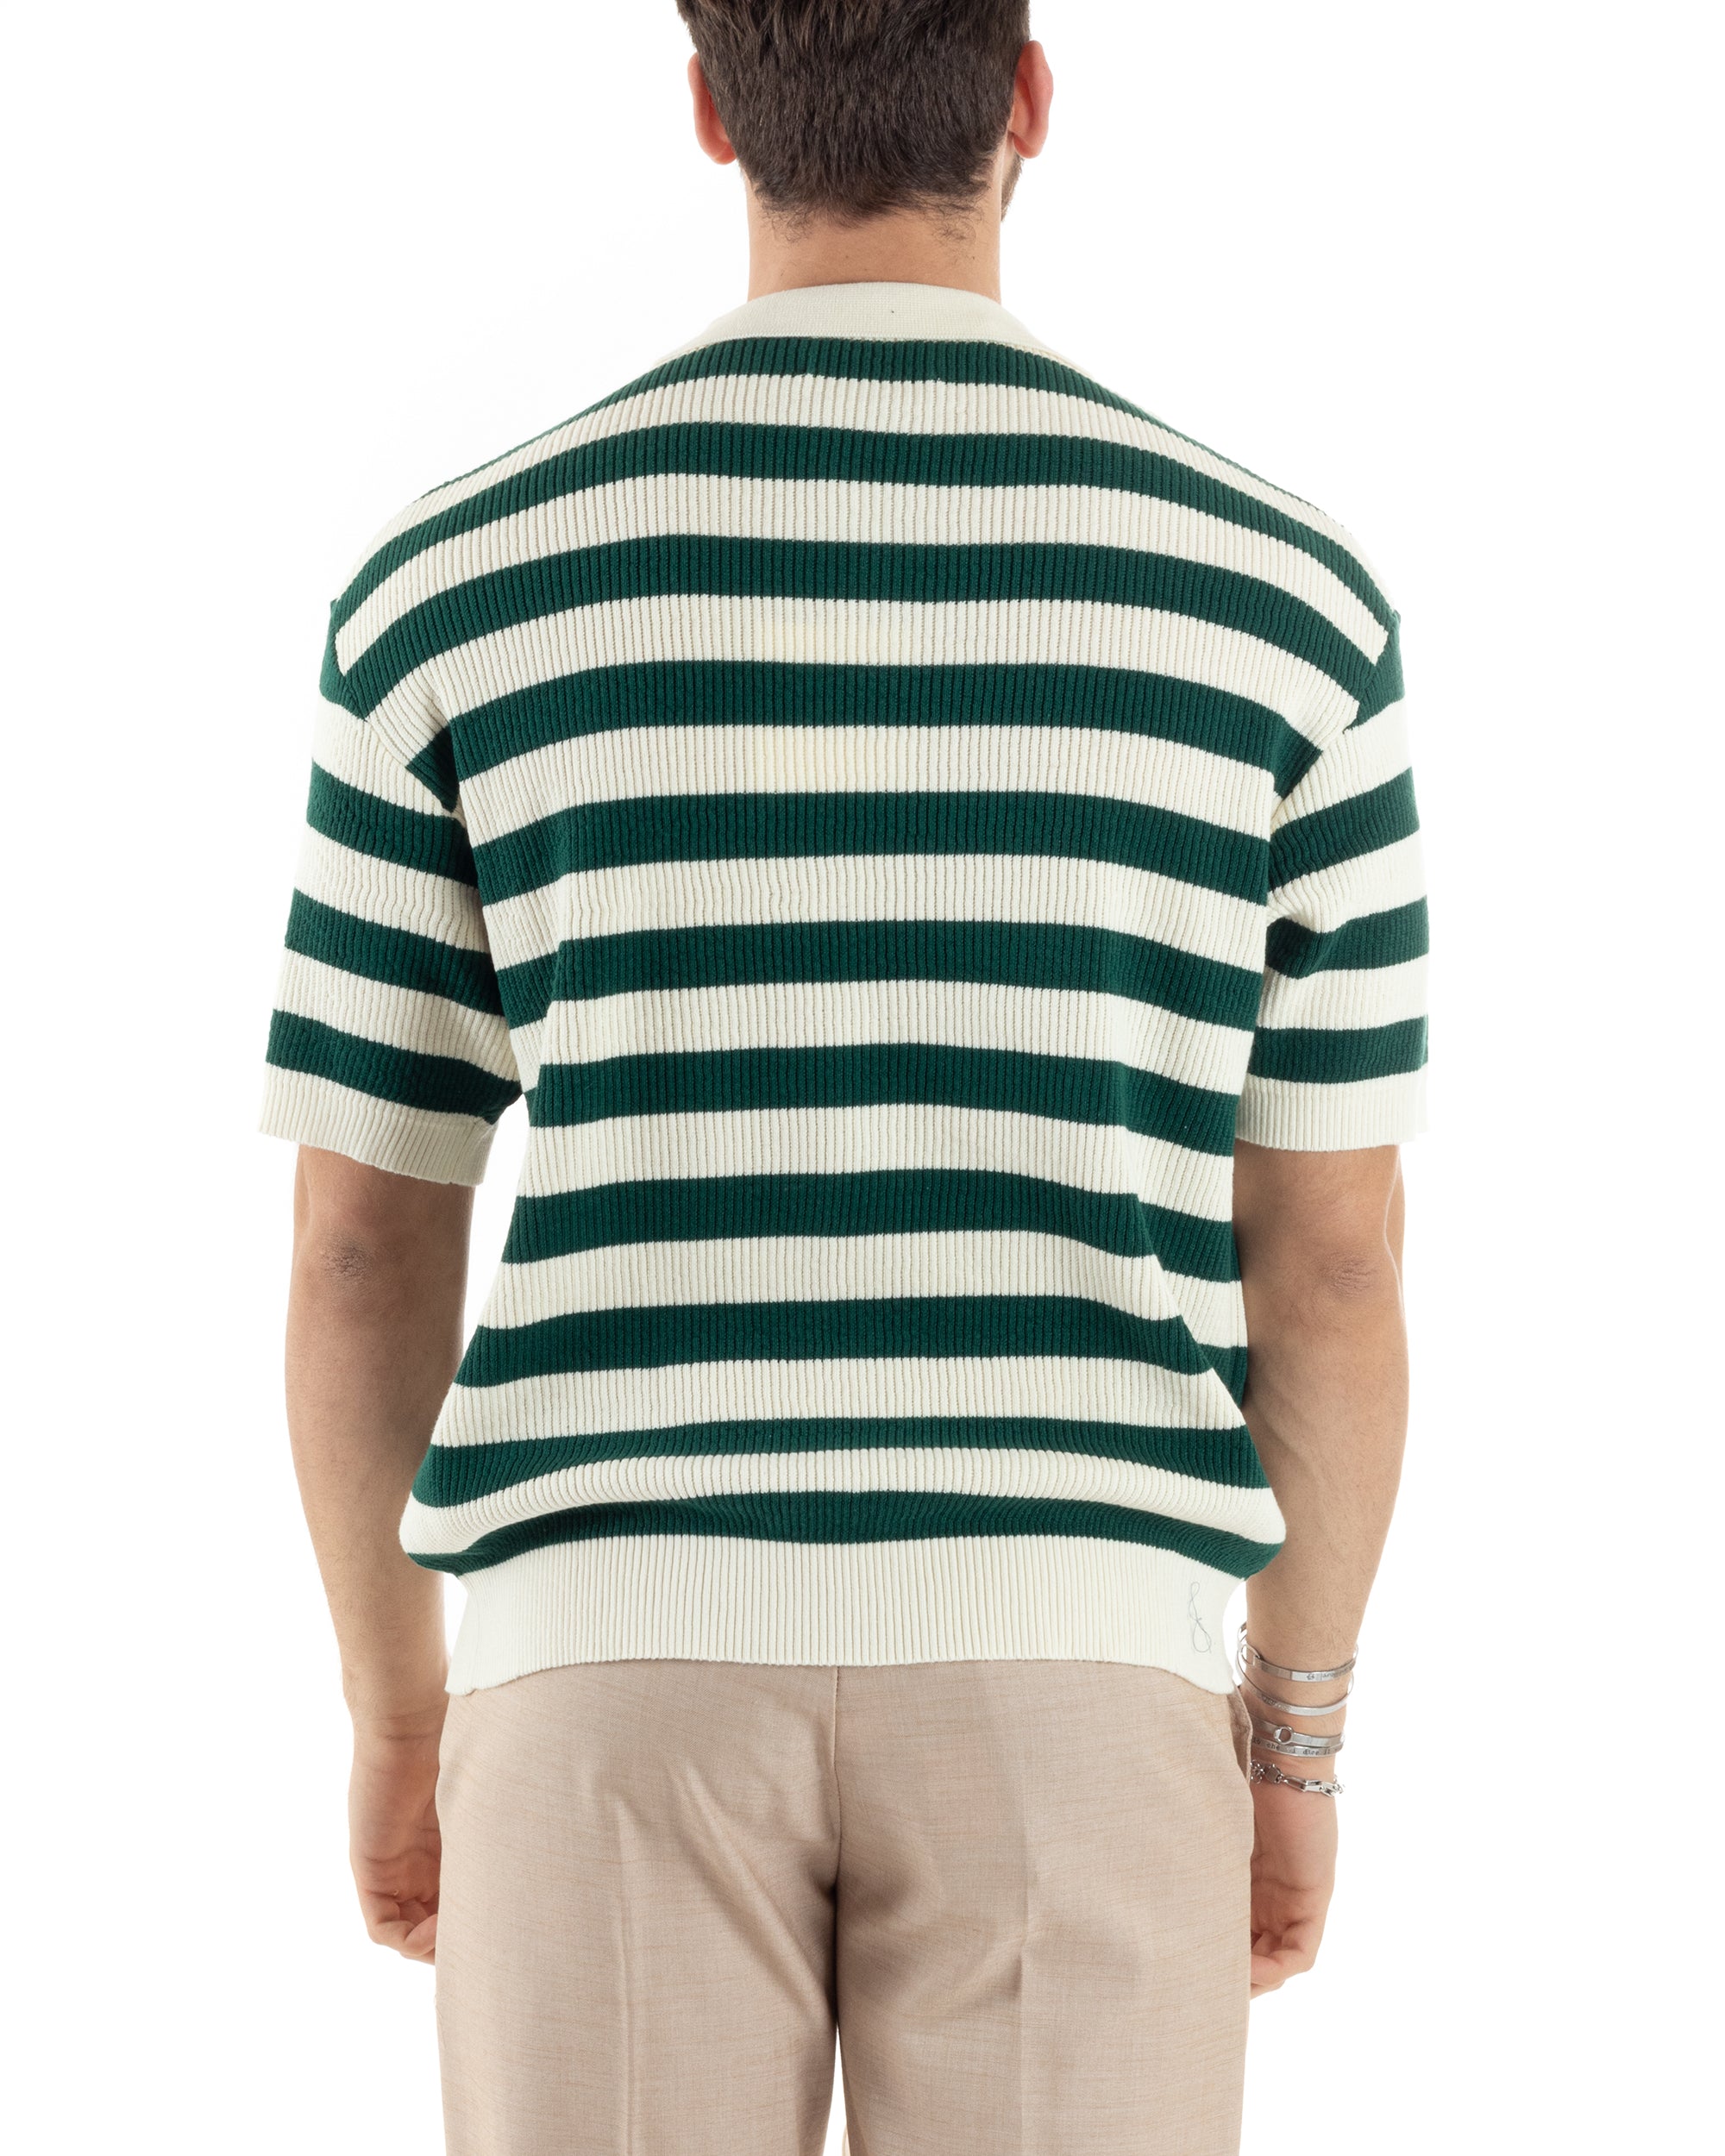 T-Shirt Uomo Maglia In Filo Rigata Verde Maglia Con Colletto Polo Scollo V Casual GIOSAL-TS2993A